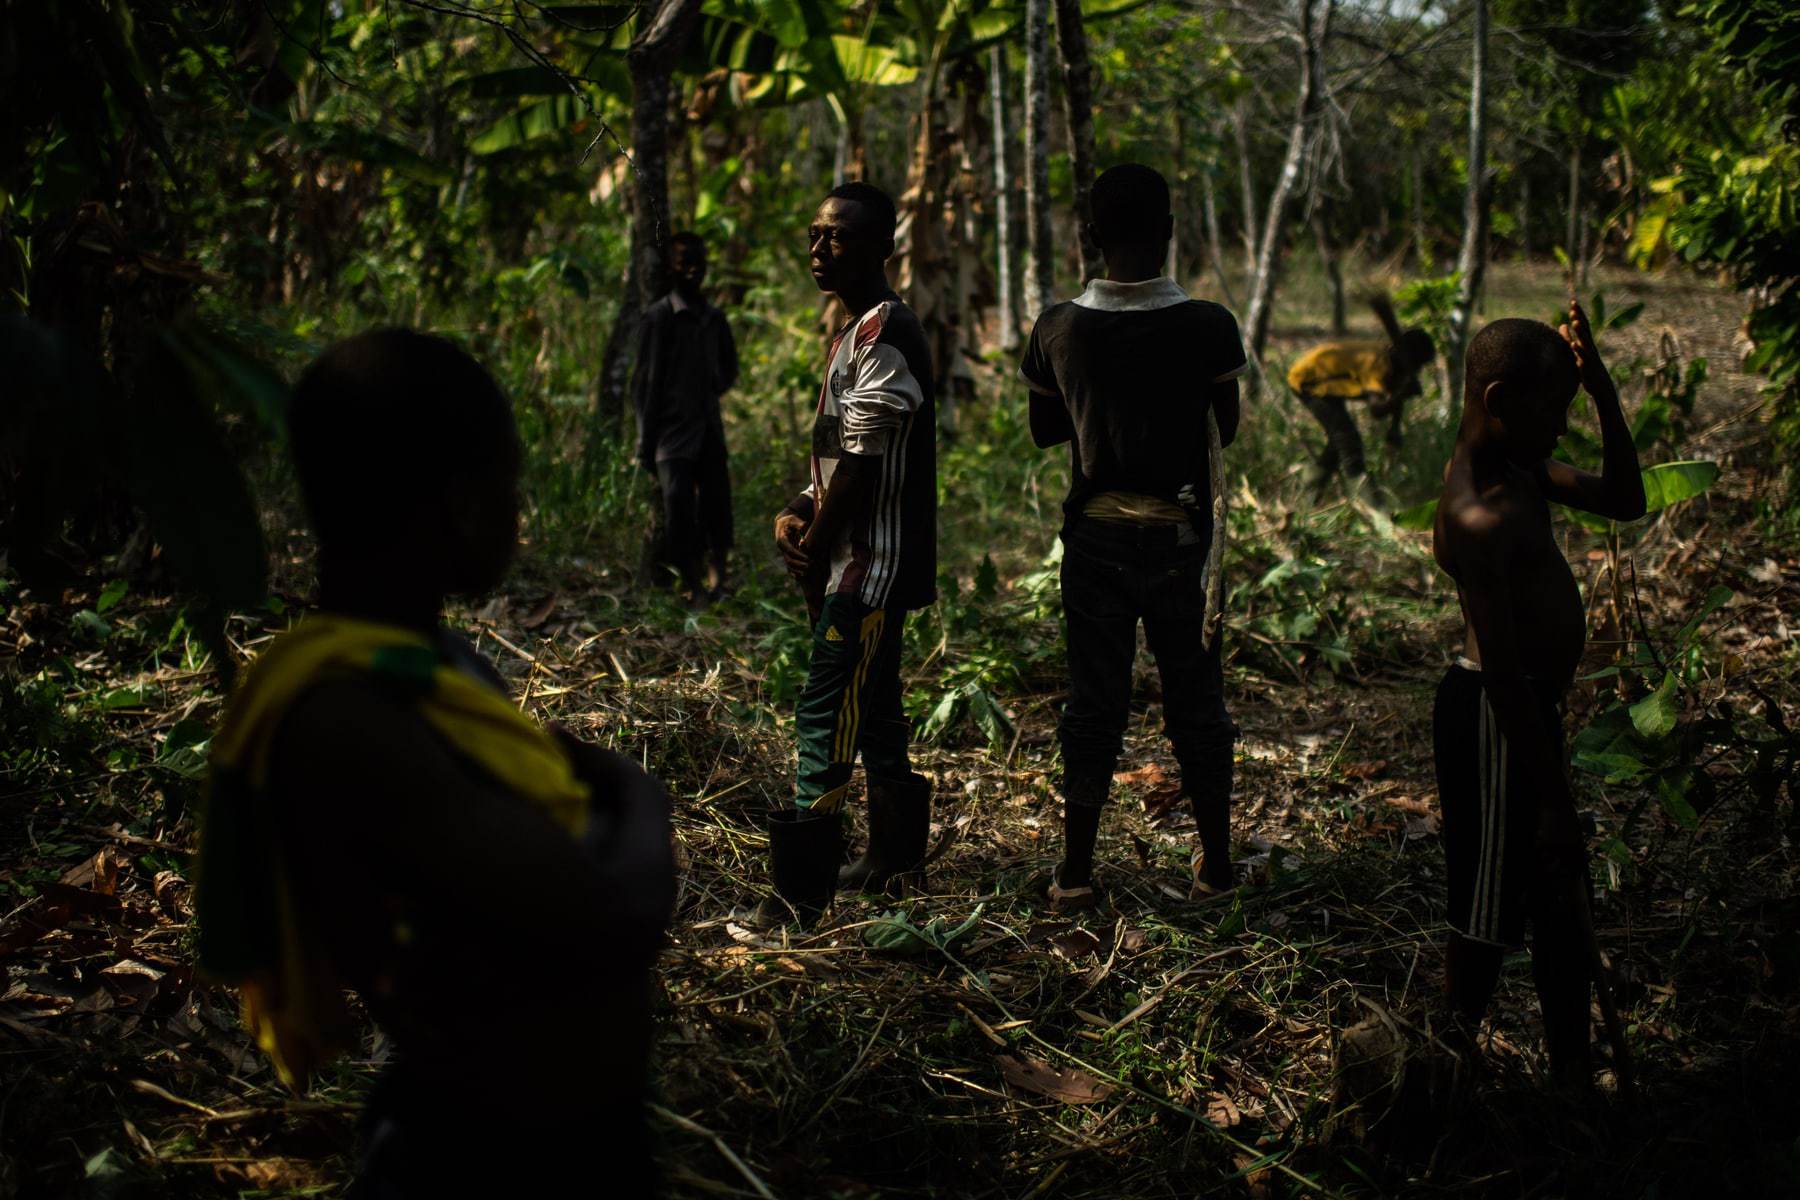 CÔTE D’IVOIRE CHILD LABOUR TRAFFICKERS ARRESTED